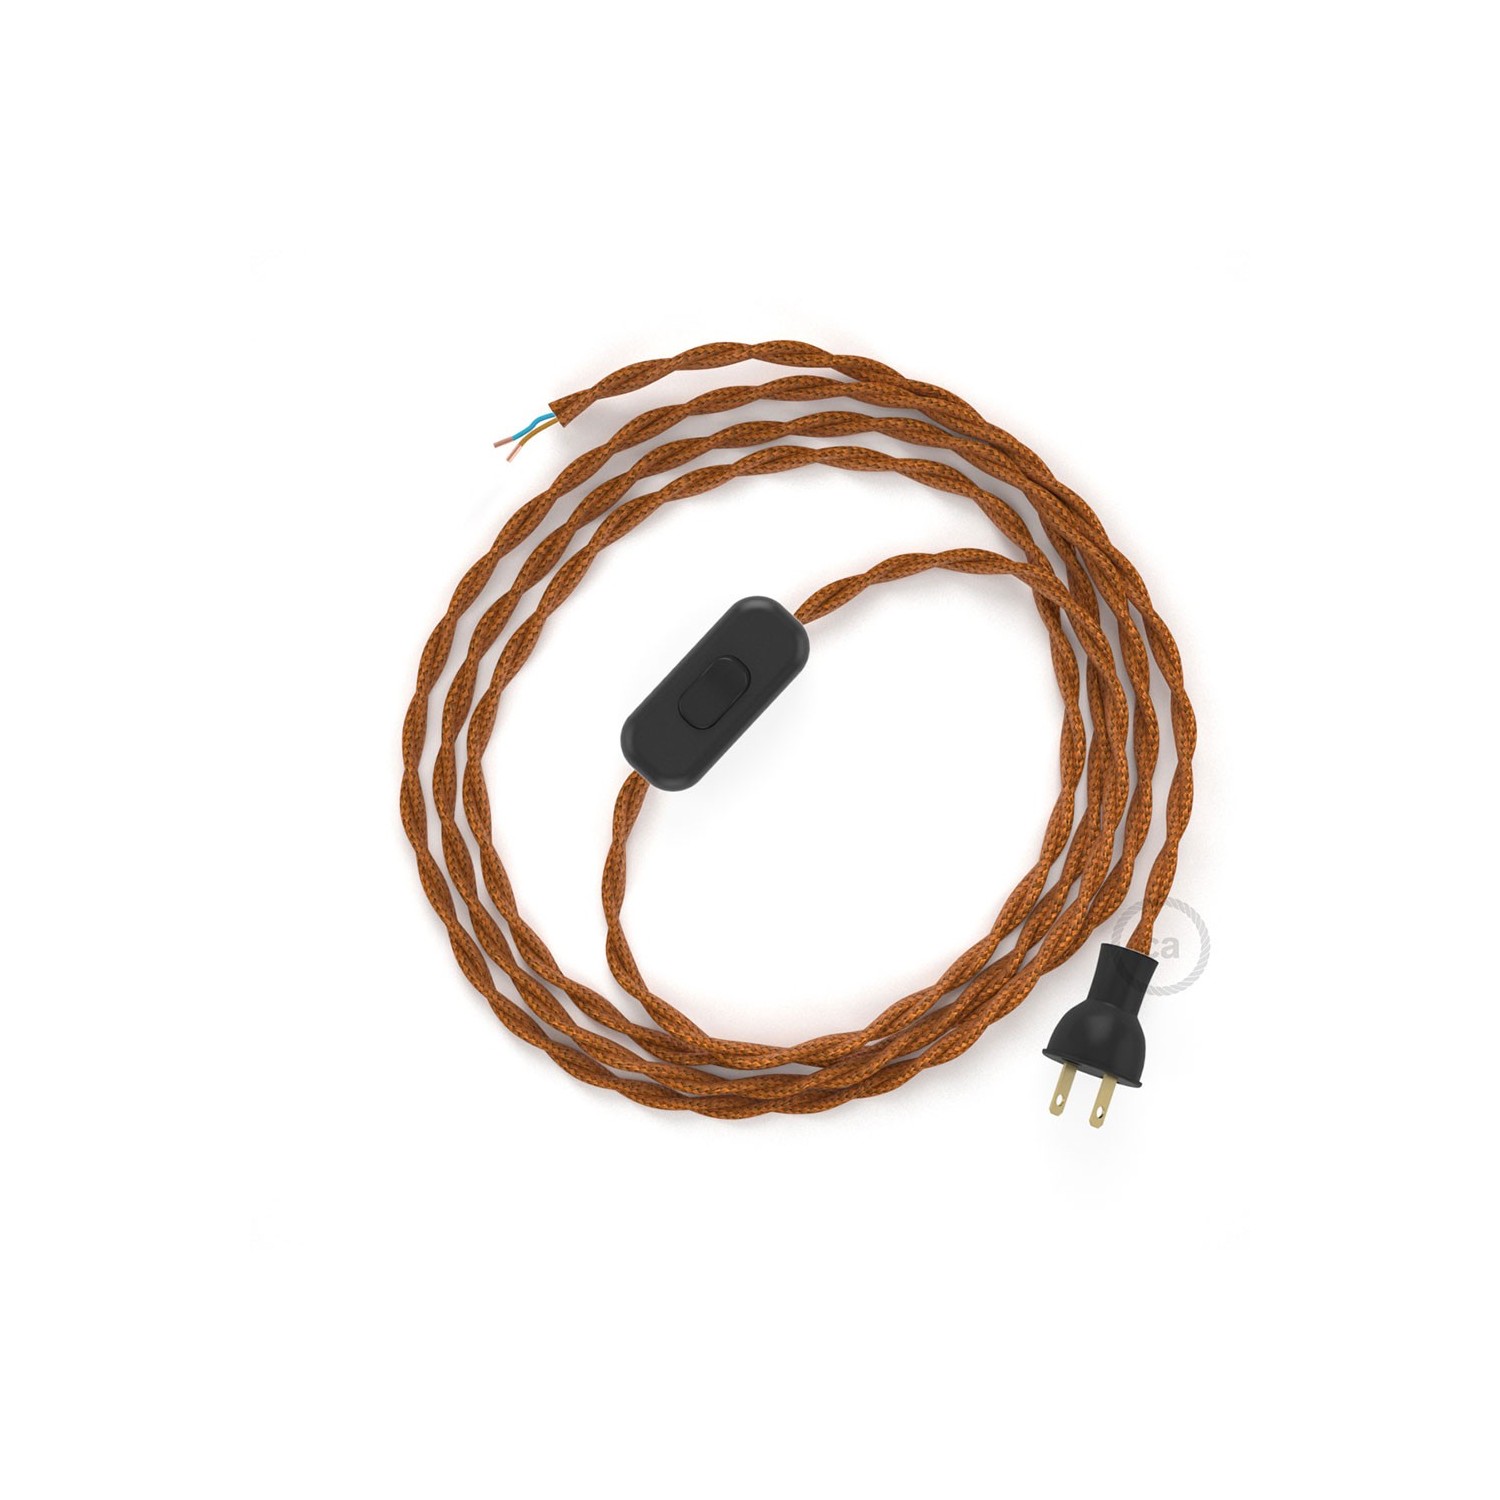 Cableado para lámpara de mesa, cable TM22 Rayón Whisky 1,8 m. Elige el color de la clavija y del interruptor!